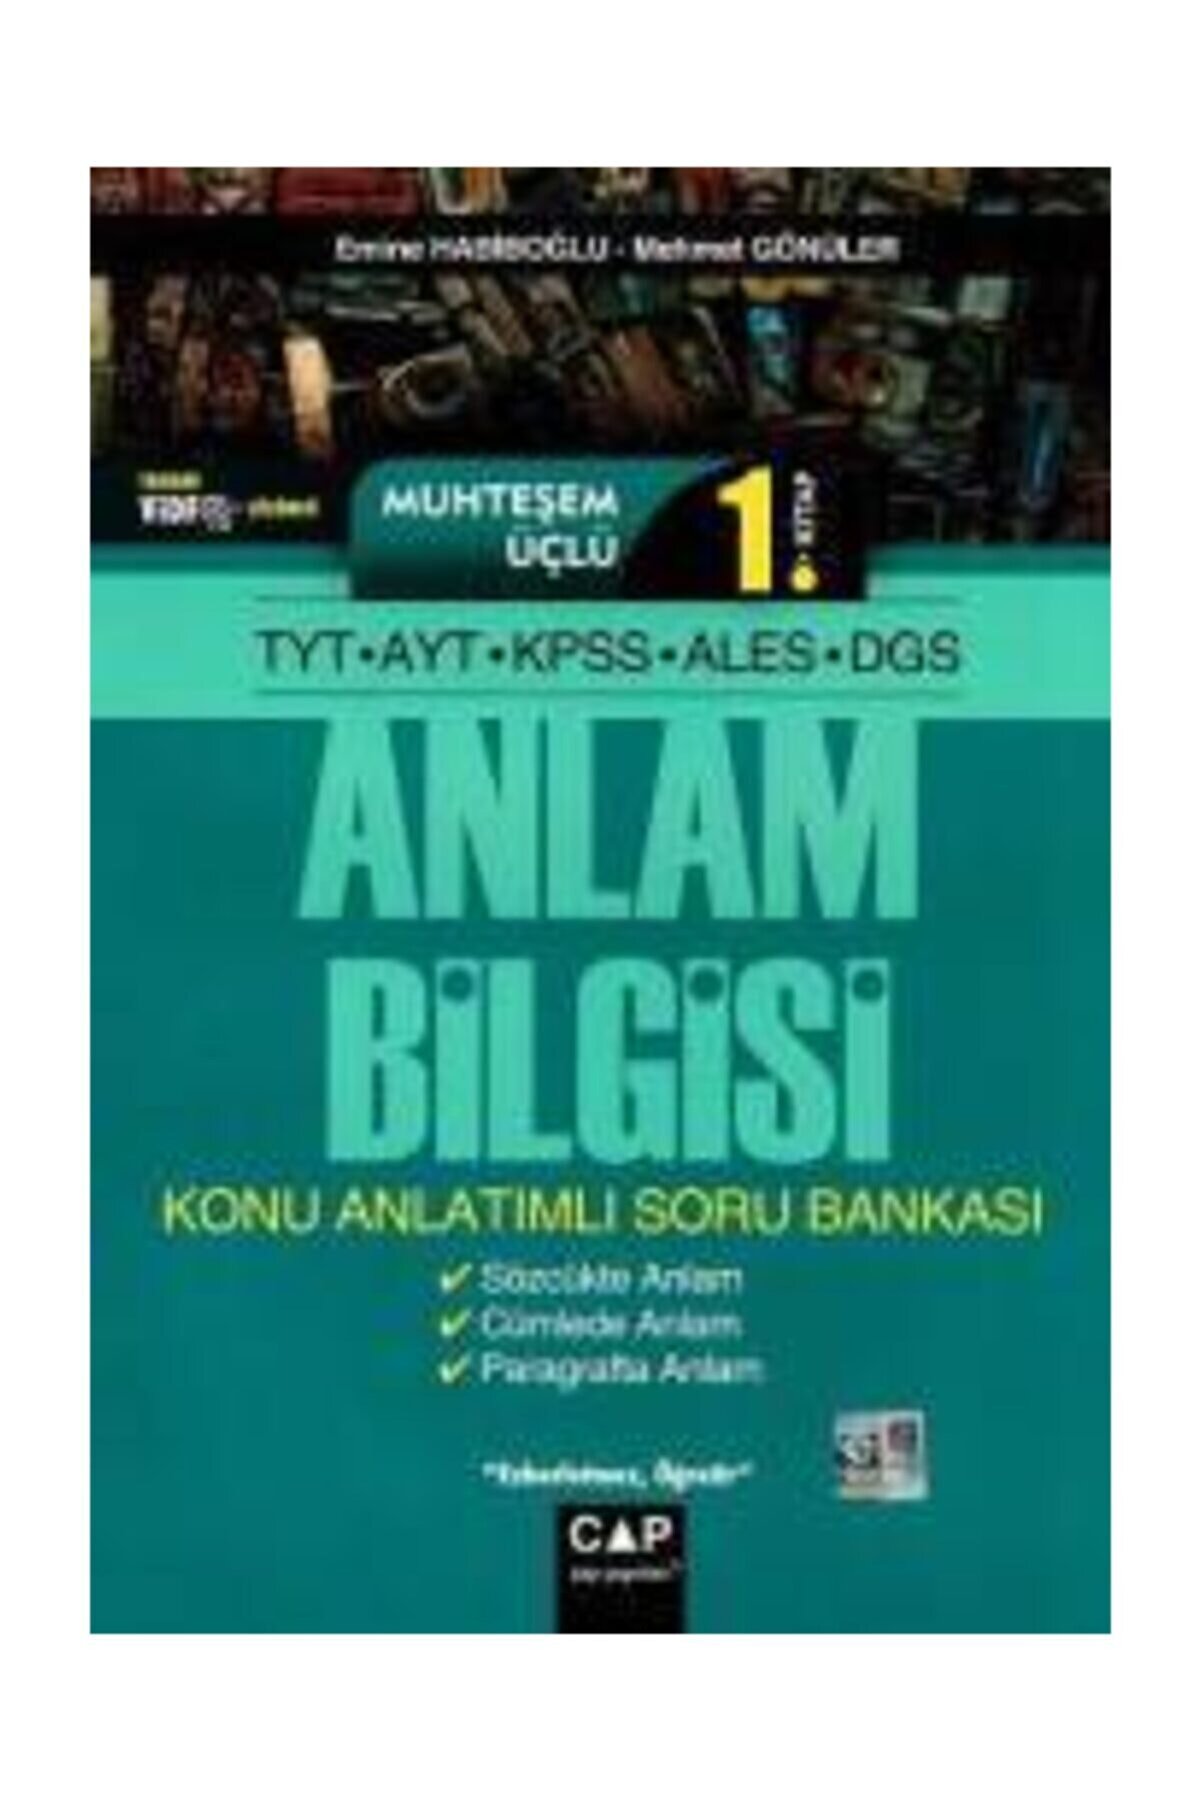 Çap Yayınları Tyt Ayt Kpss Ales Dgs Muhteşem Üçlü 1. Kitap Anlam Bilgisi Konu Anlatımlı Soru Bankası